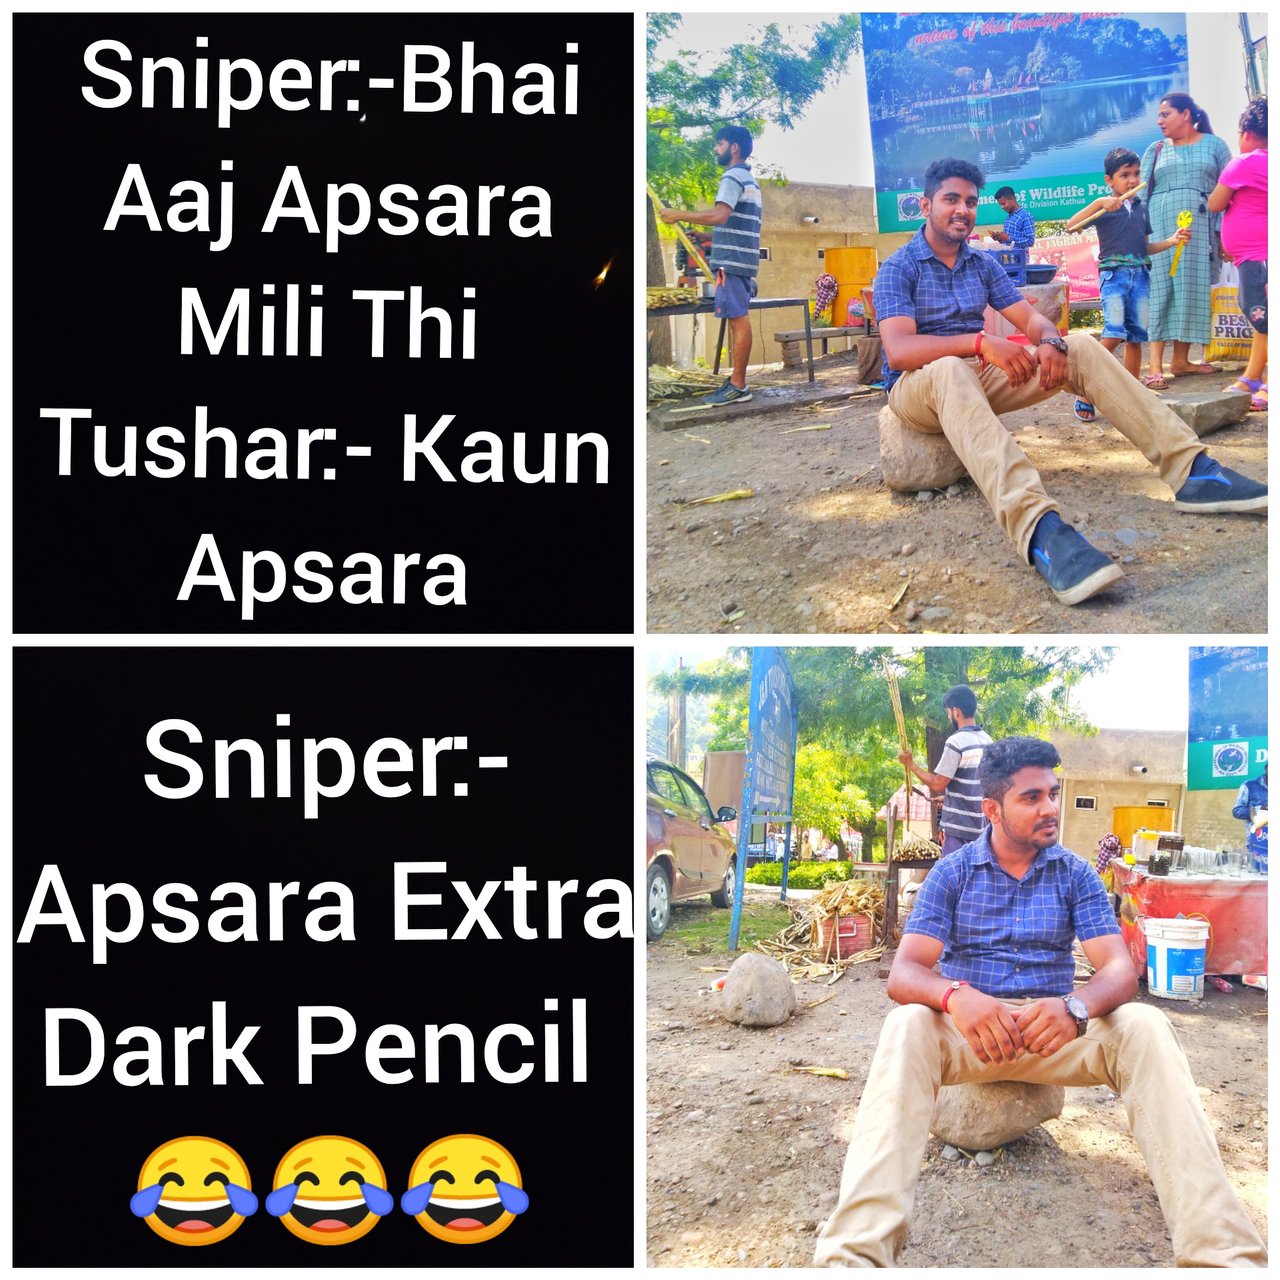 Funny Hindi Memes Sniperismeme 2019 Steempeak